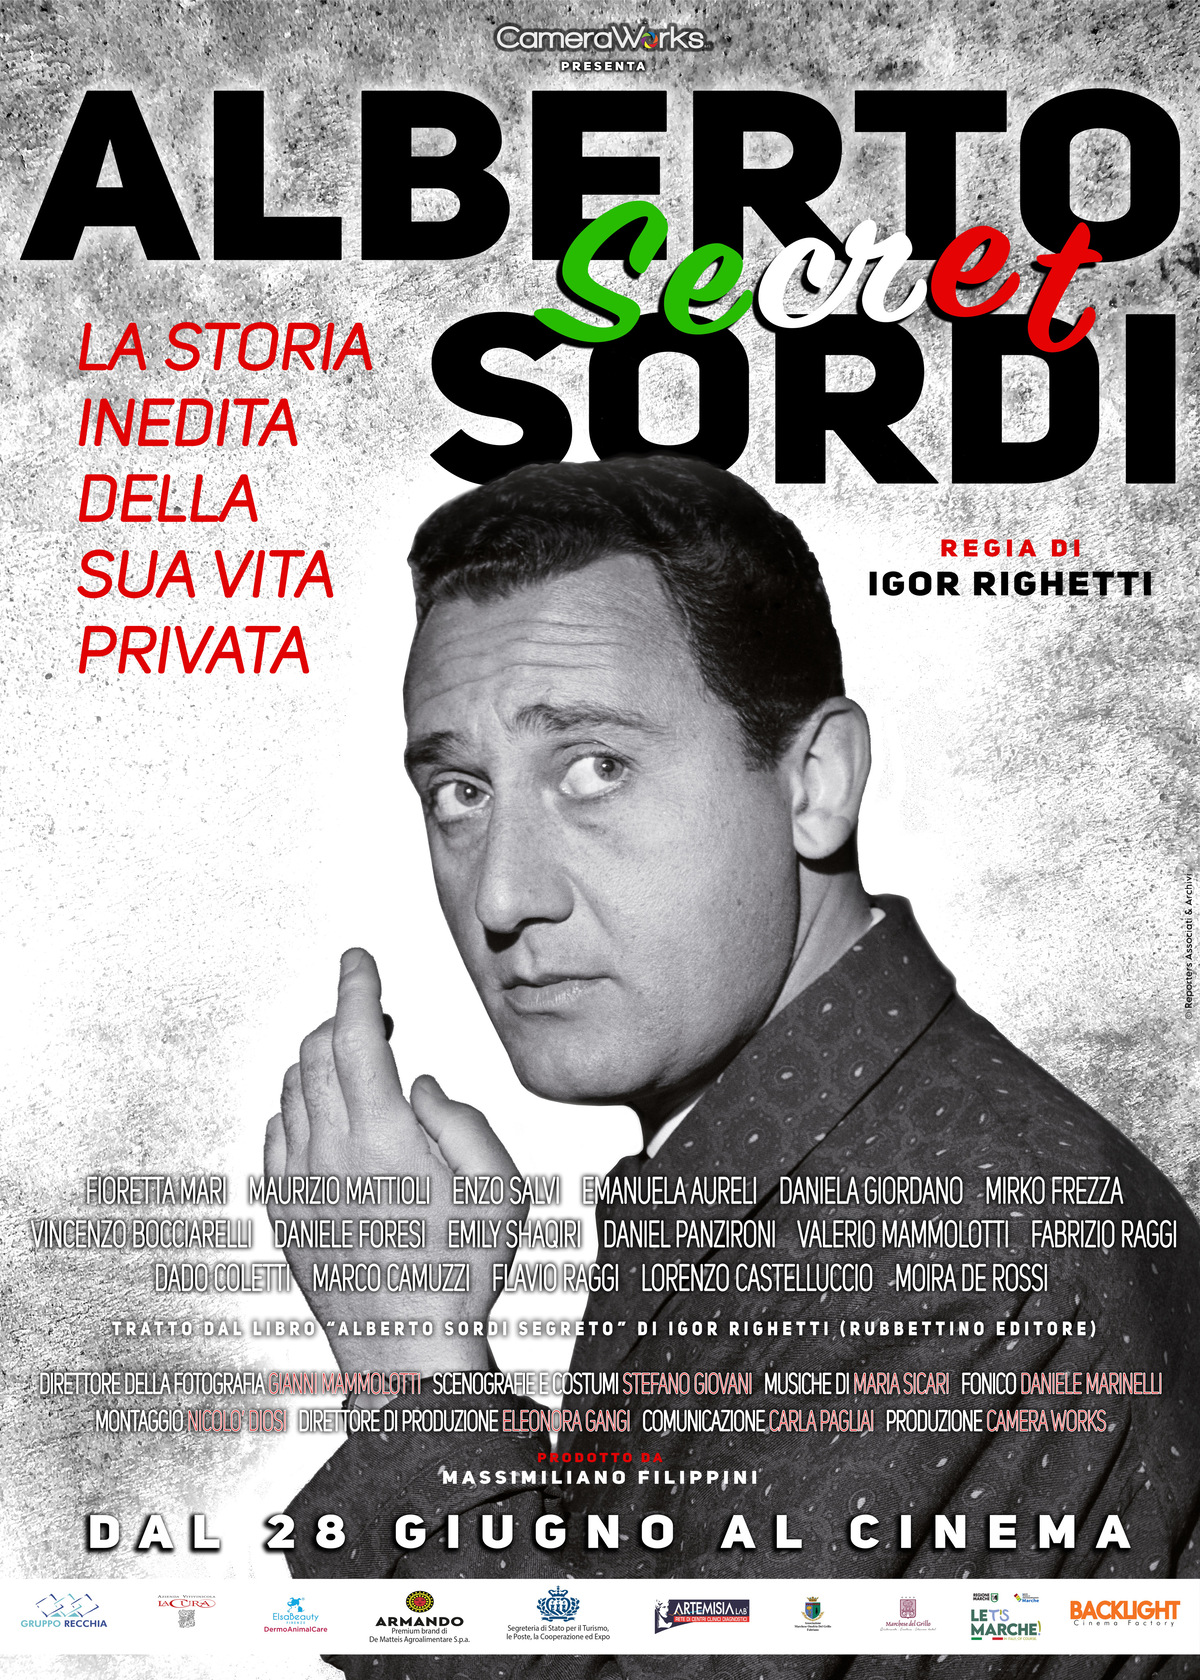 Locandina docufilm Alberto Sordi secret di Igor Righetti. Al cinema dal 28 giugno